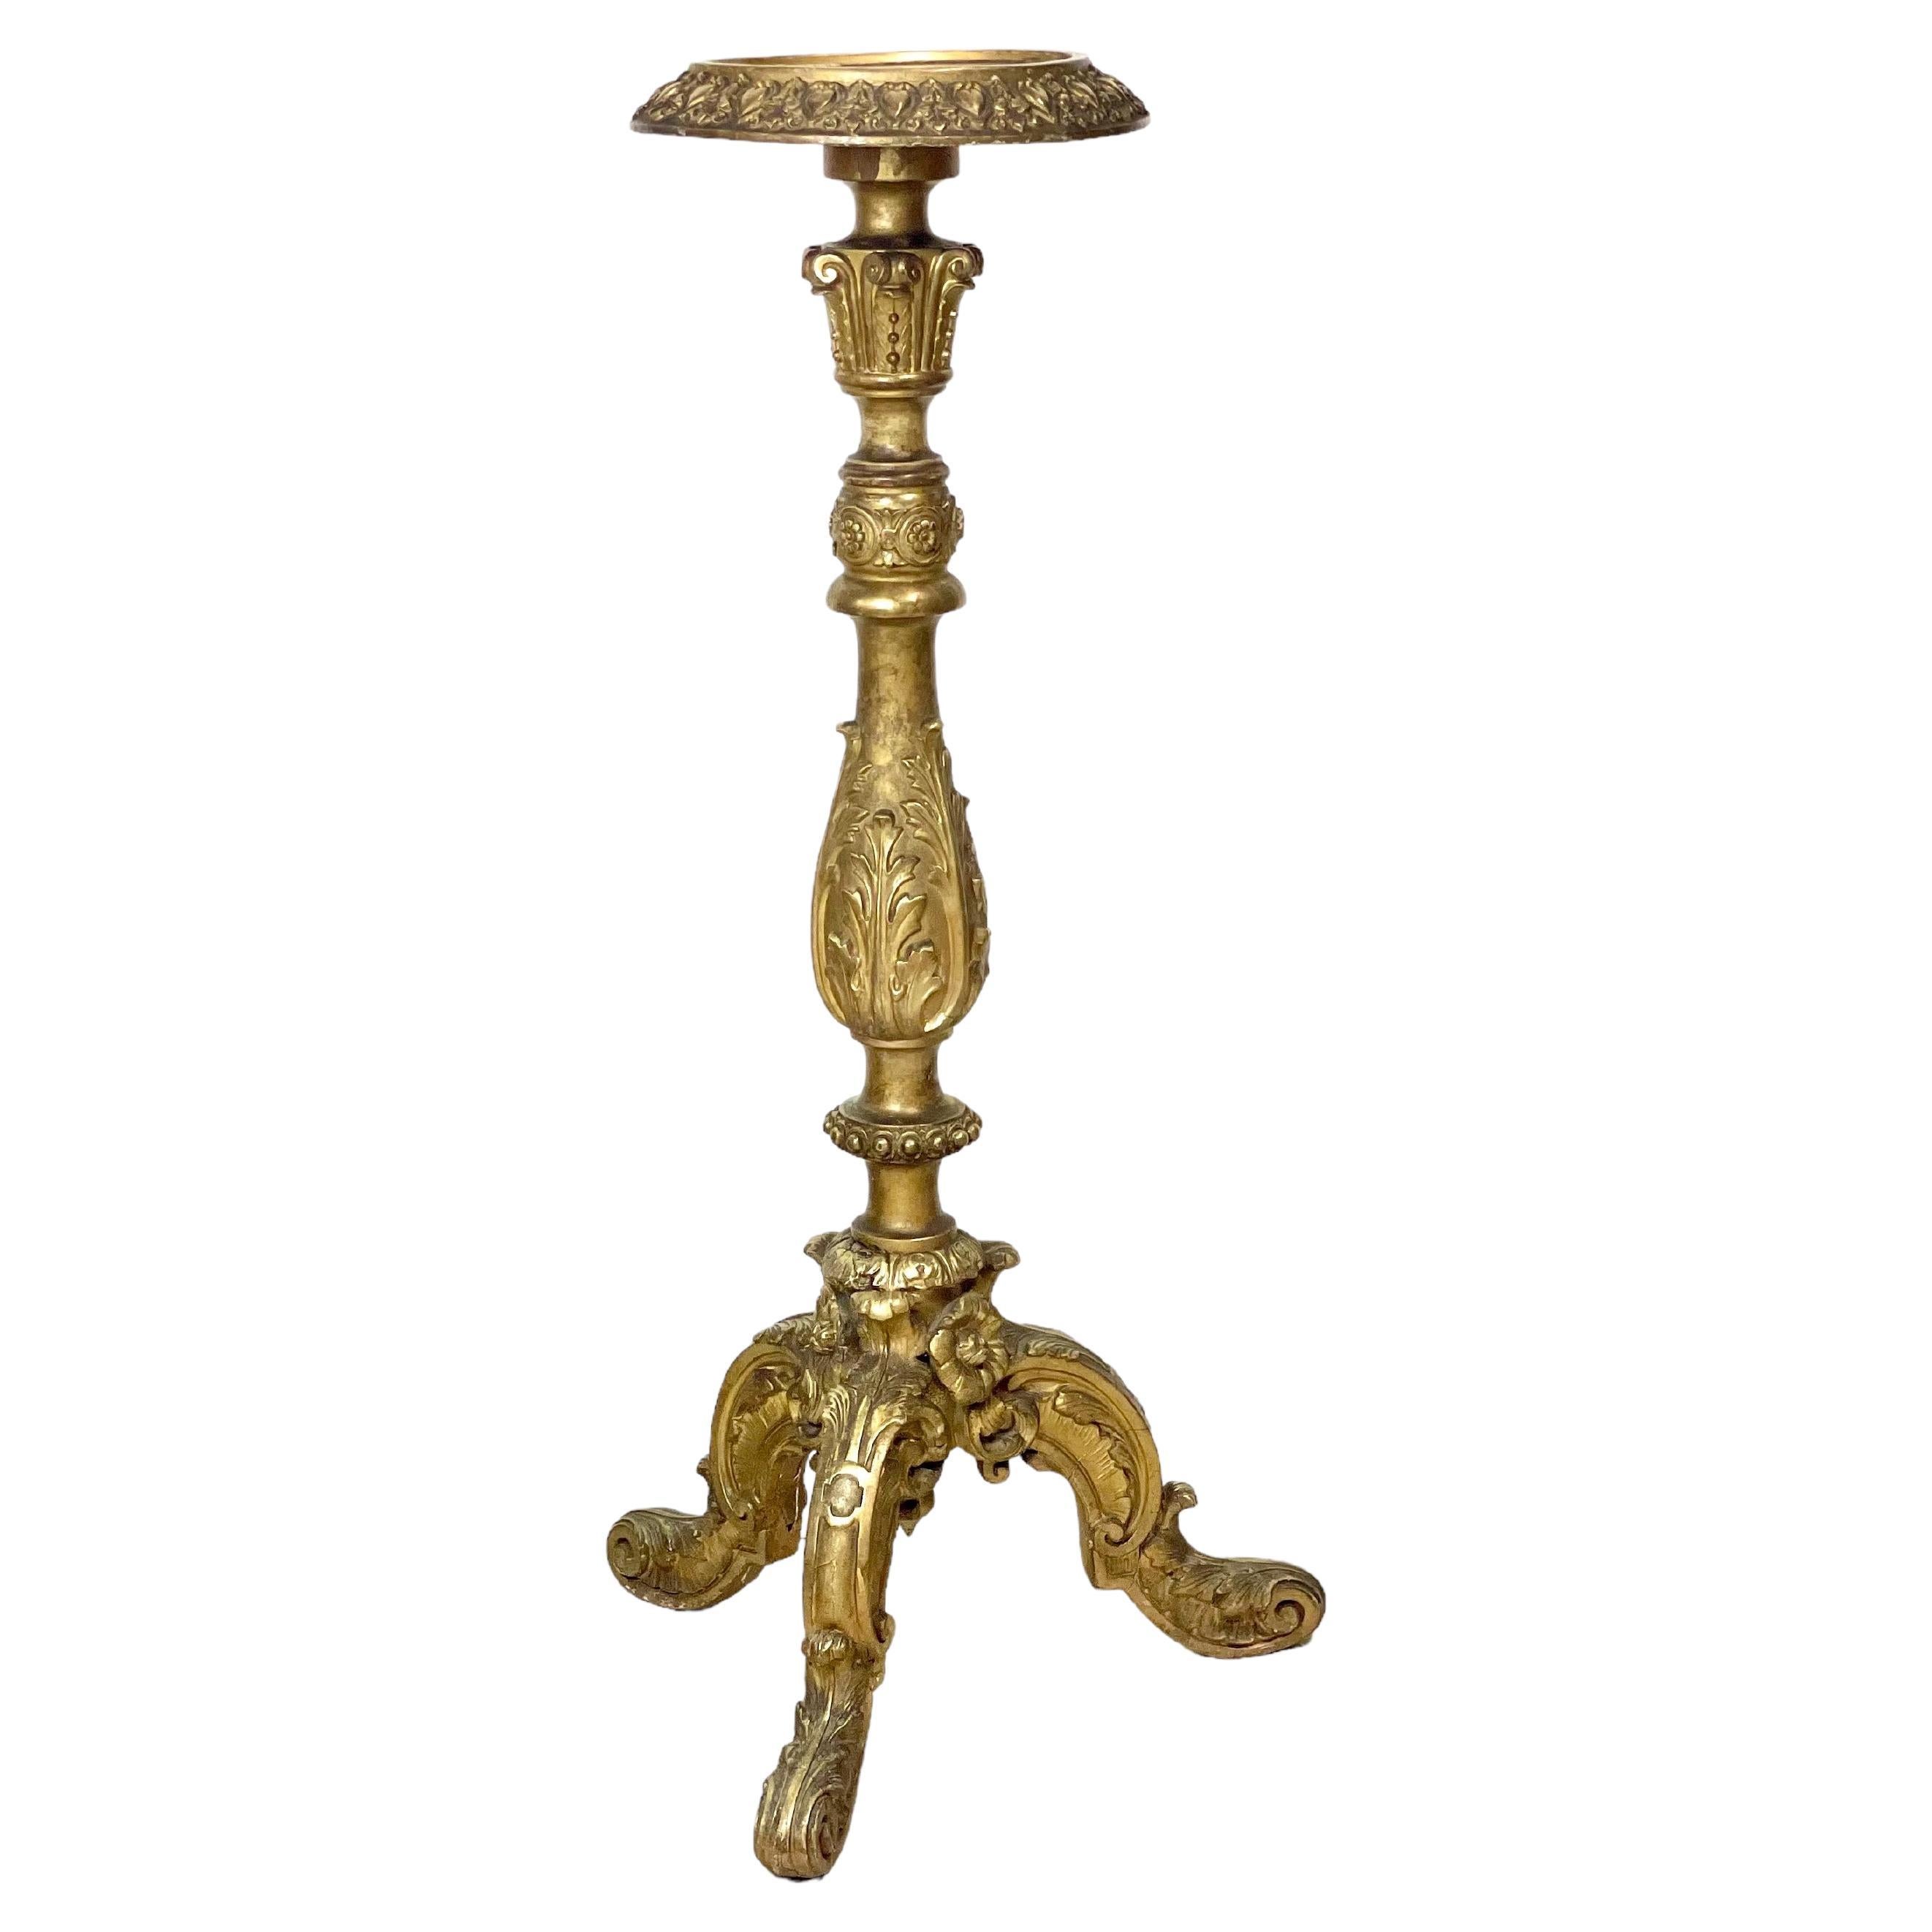 The Pedestal en bois doré de style Louis XV